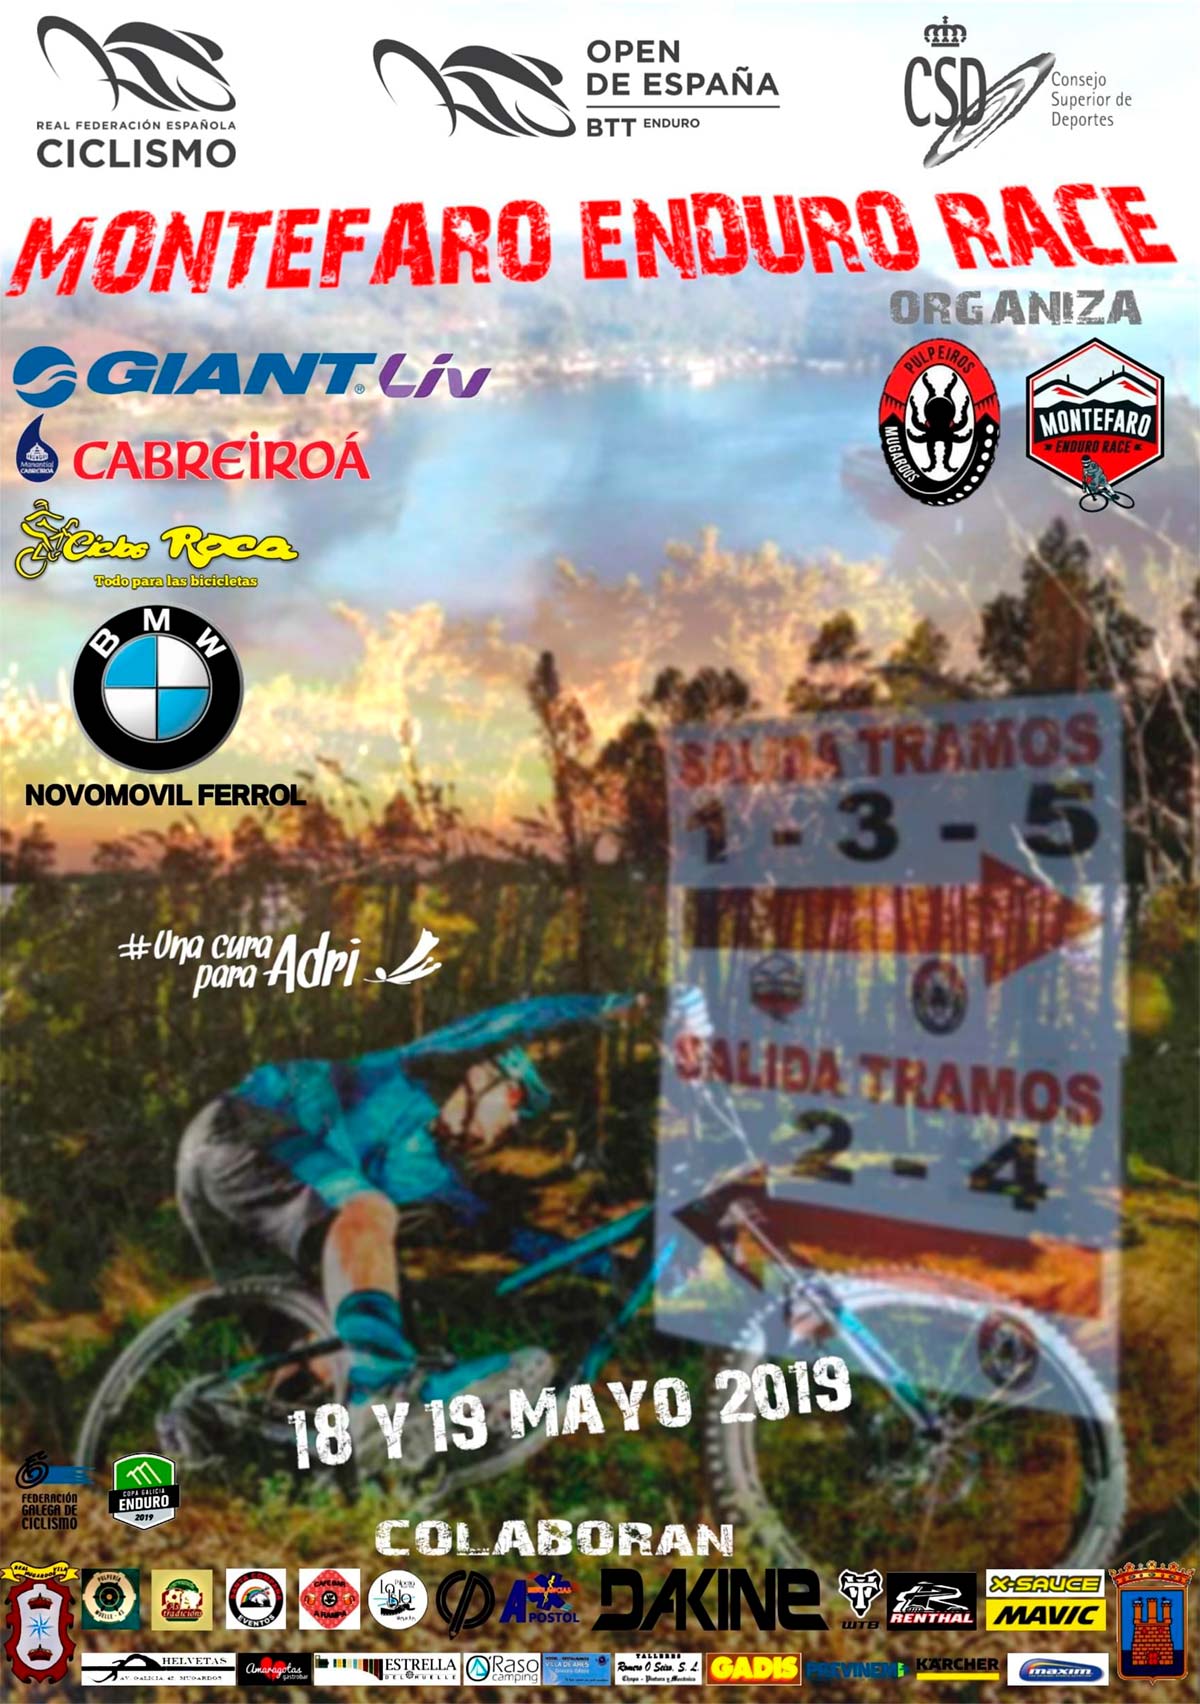 Todo a punto para la Montefaro Enduro Race, tercera prueba del Open de España de Enduro 2019